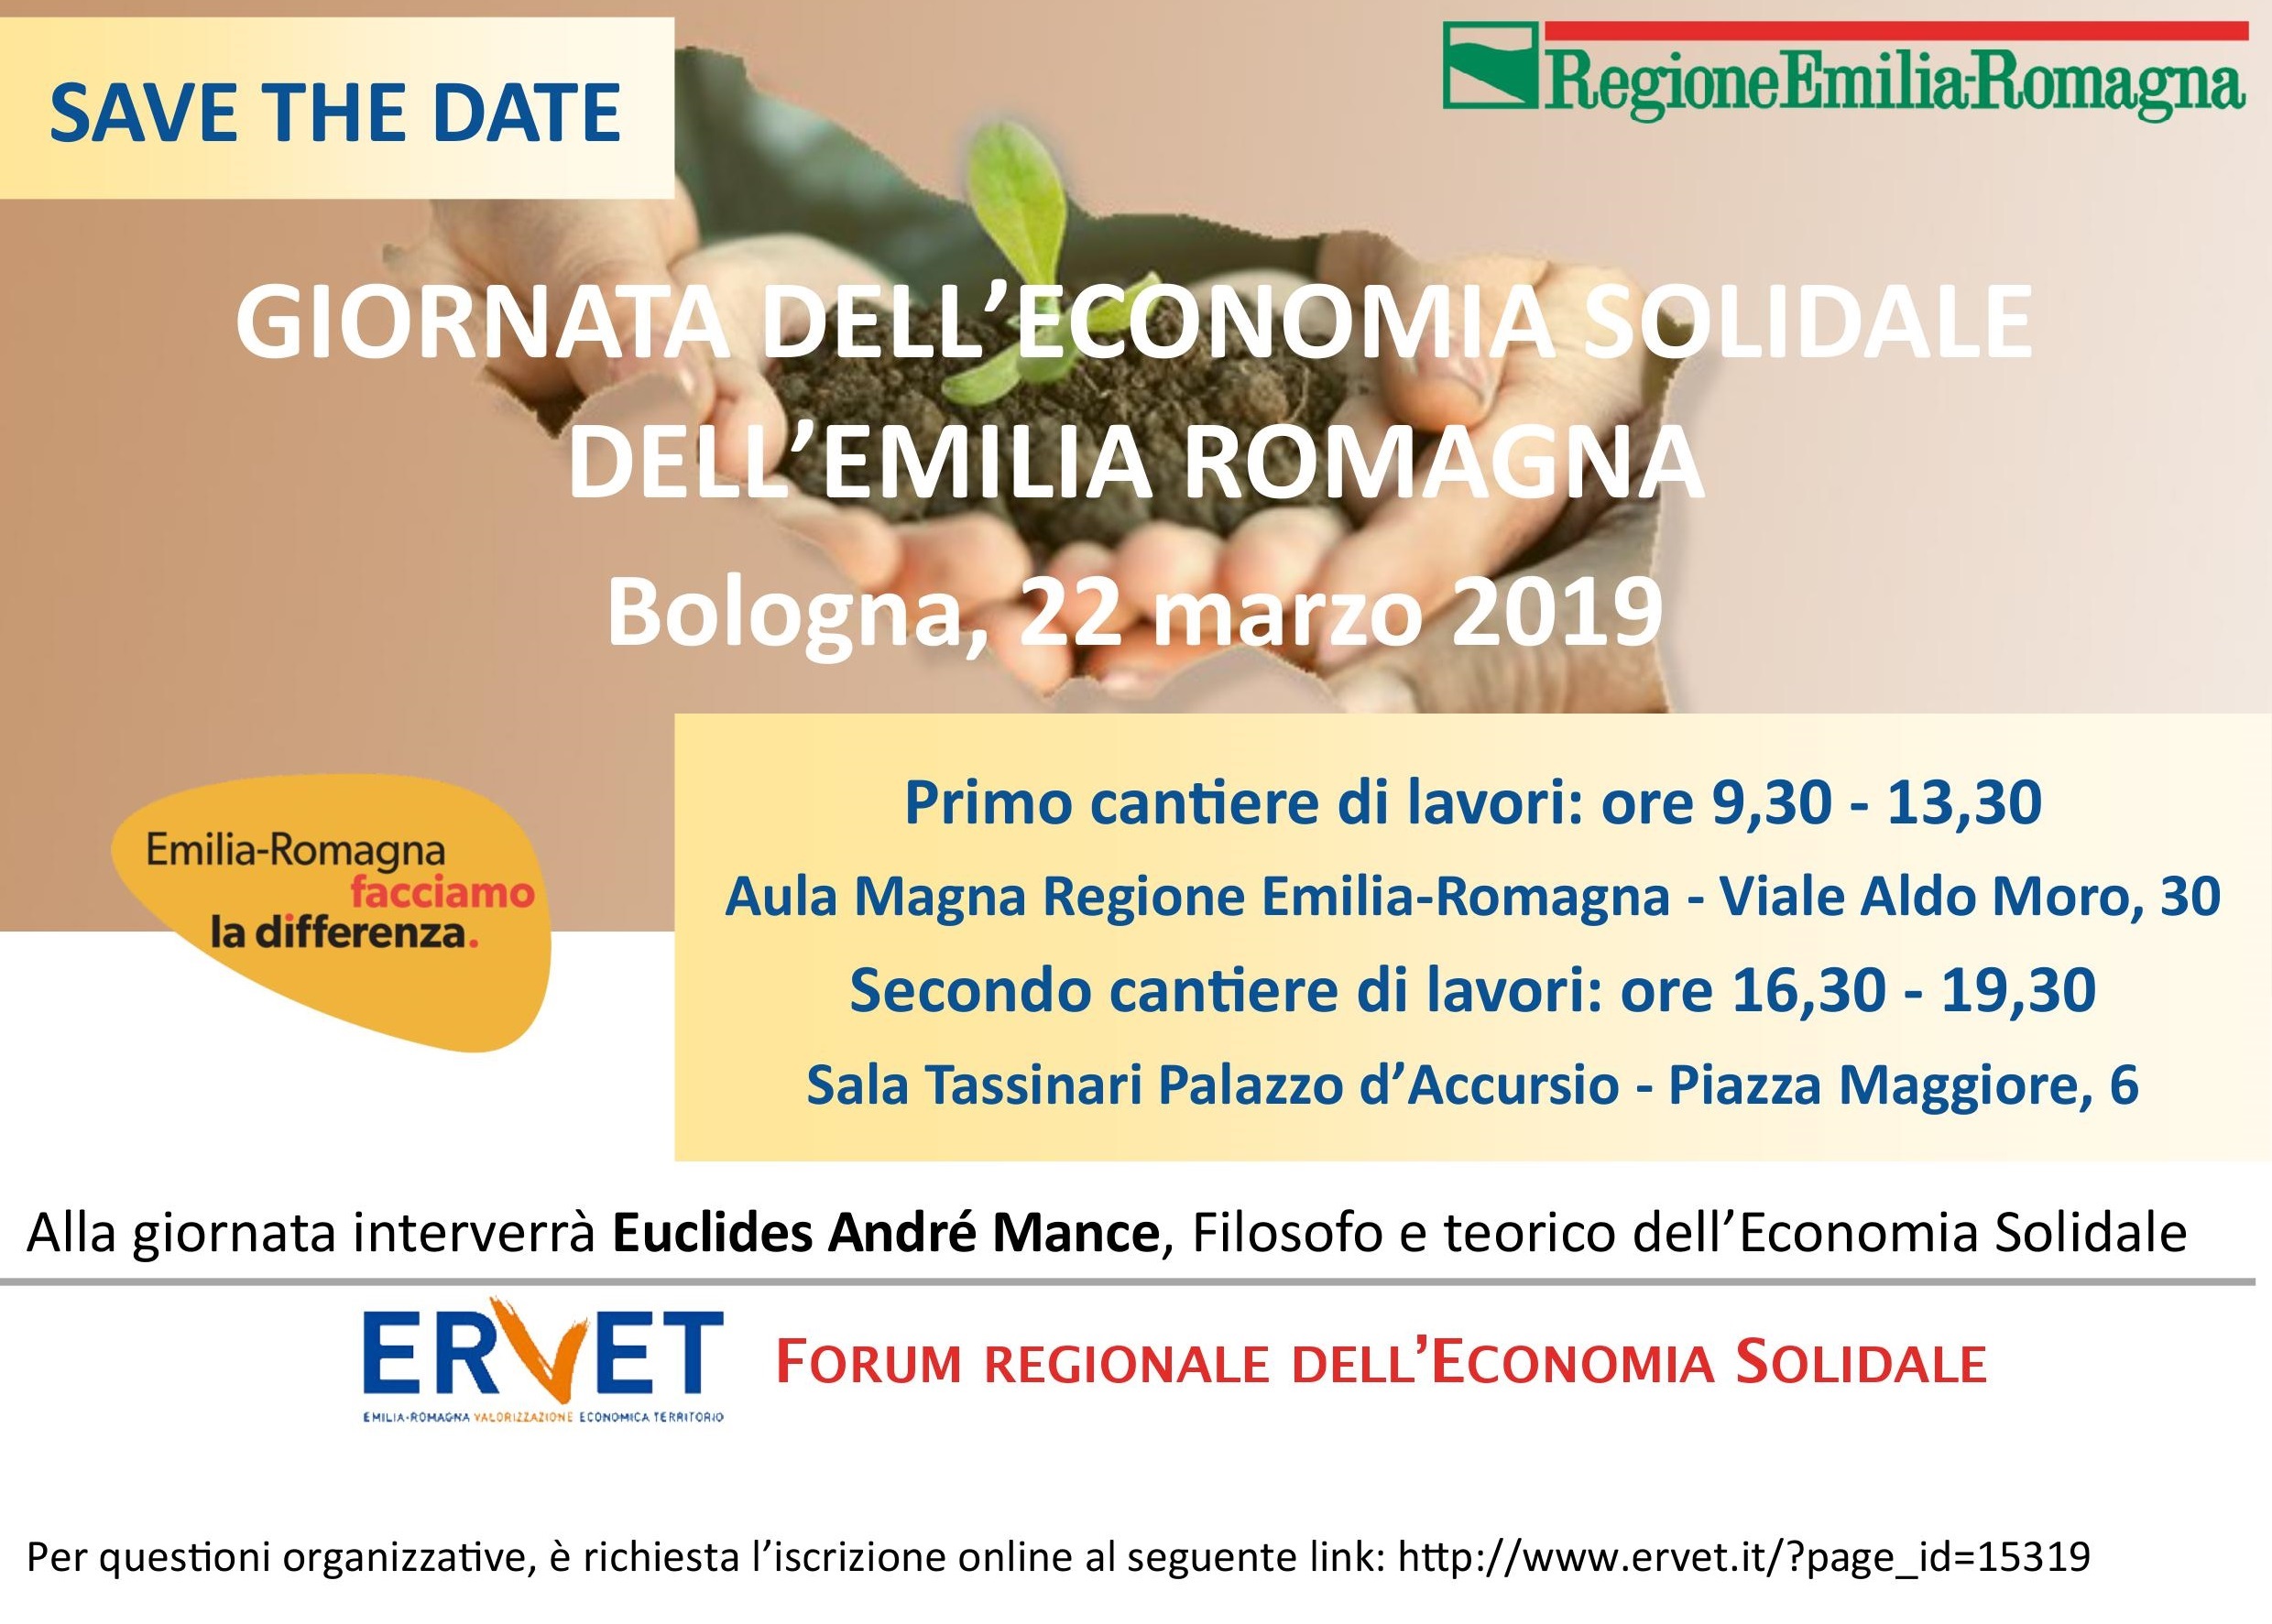 Giornata dell’Economia solidale dell’Emilia-Romagna, 22 marzo 2019: IL PROGRAMMA